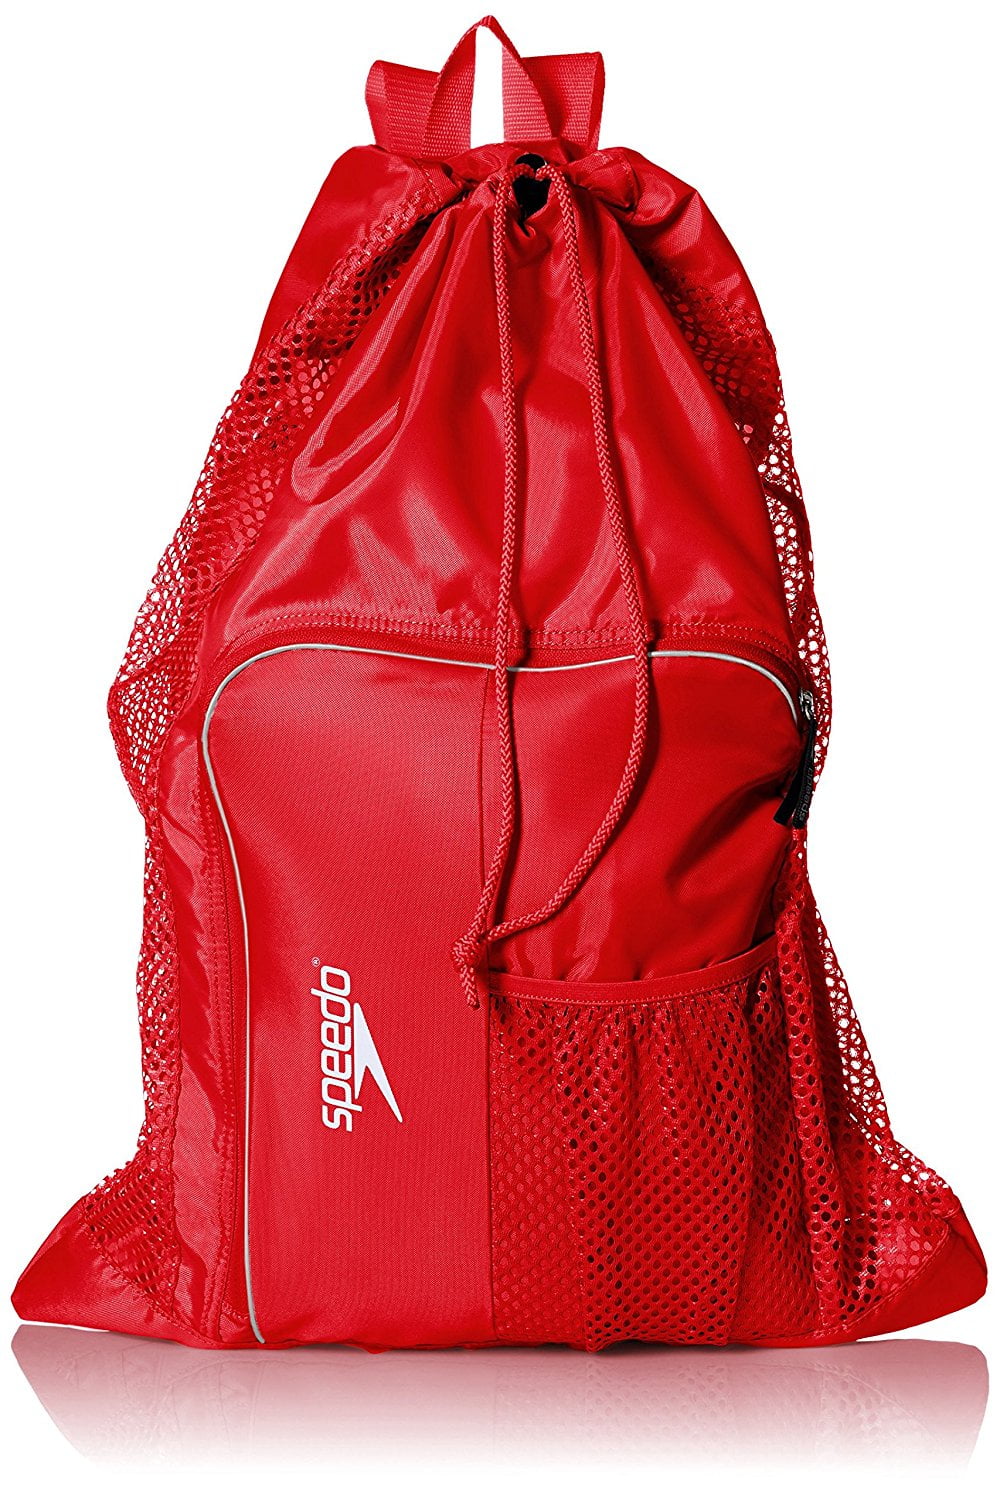 Speedo Adult Unisex Equipment Mesh Bag for Swimming kit 